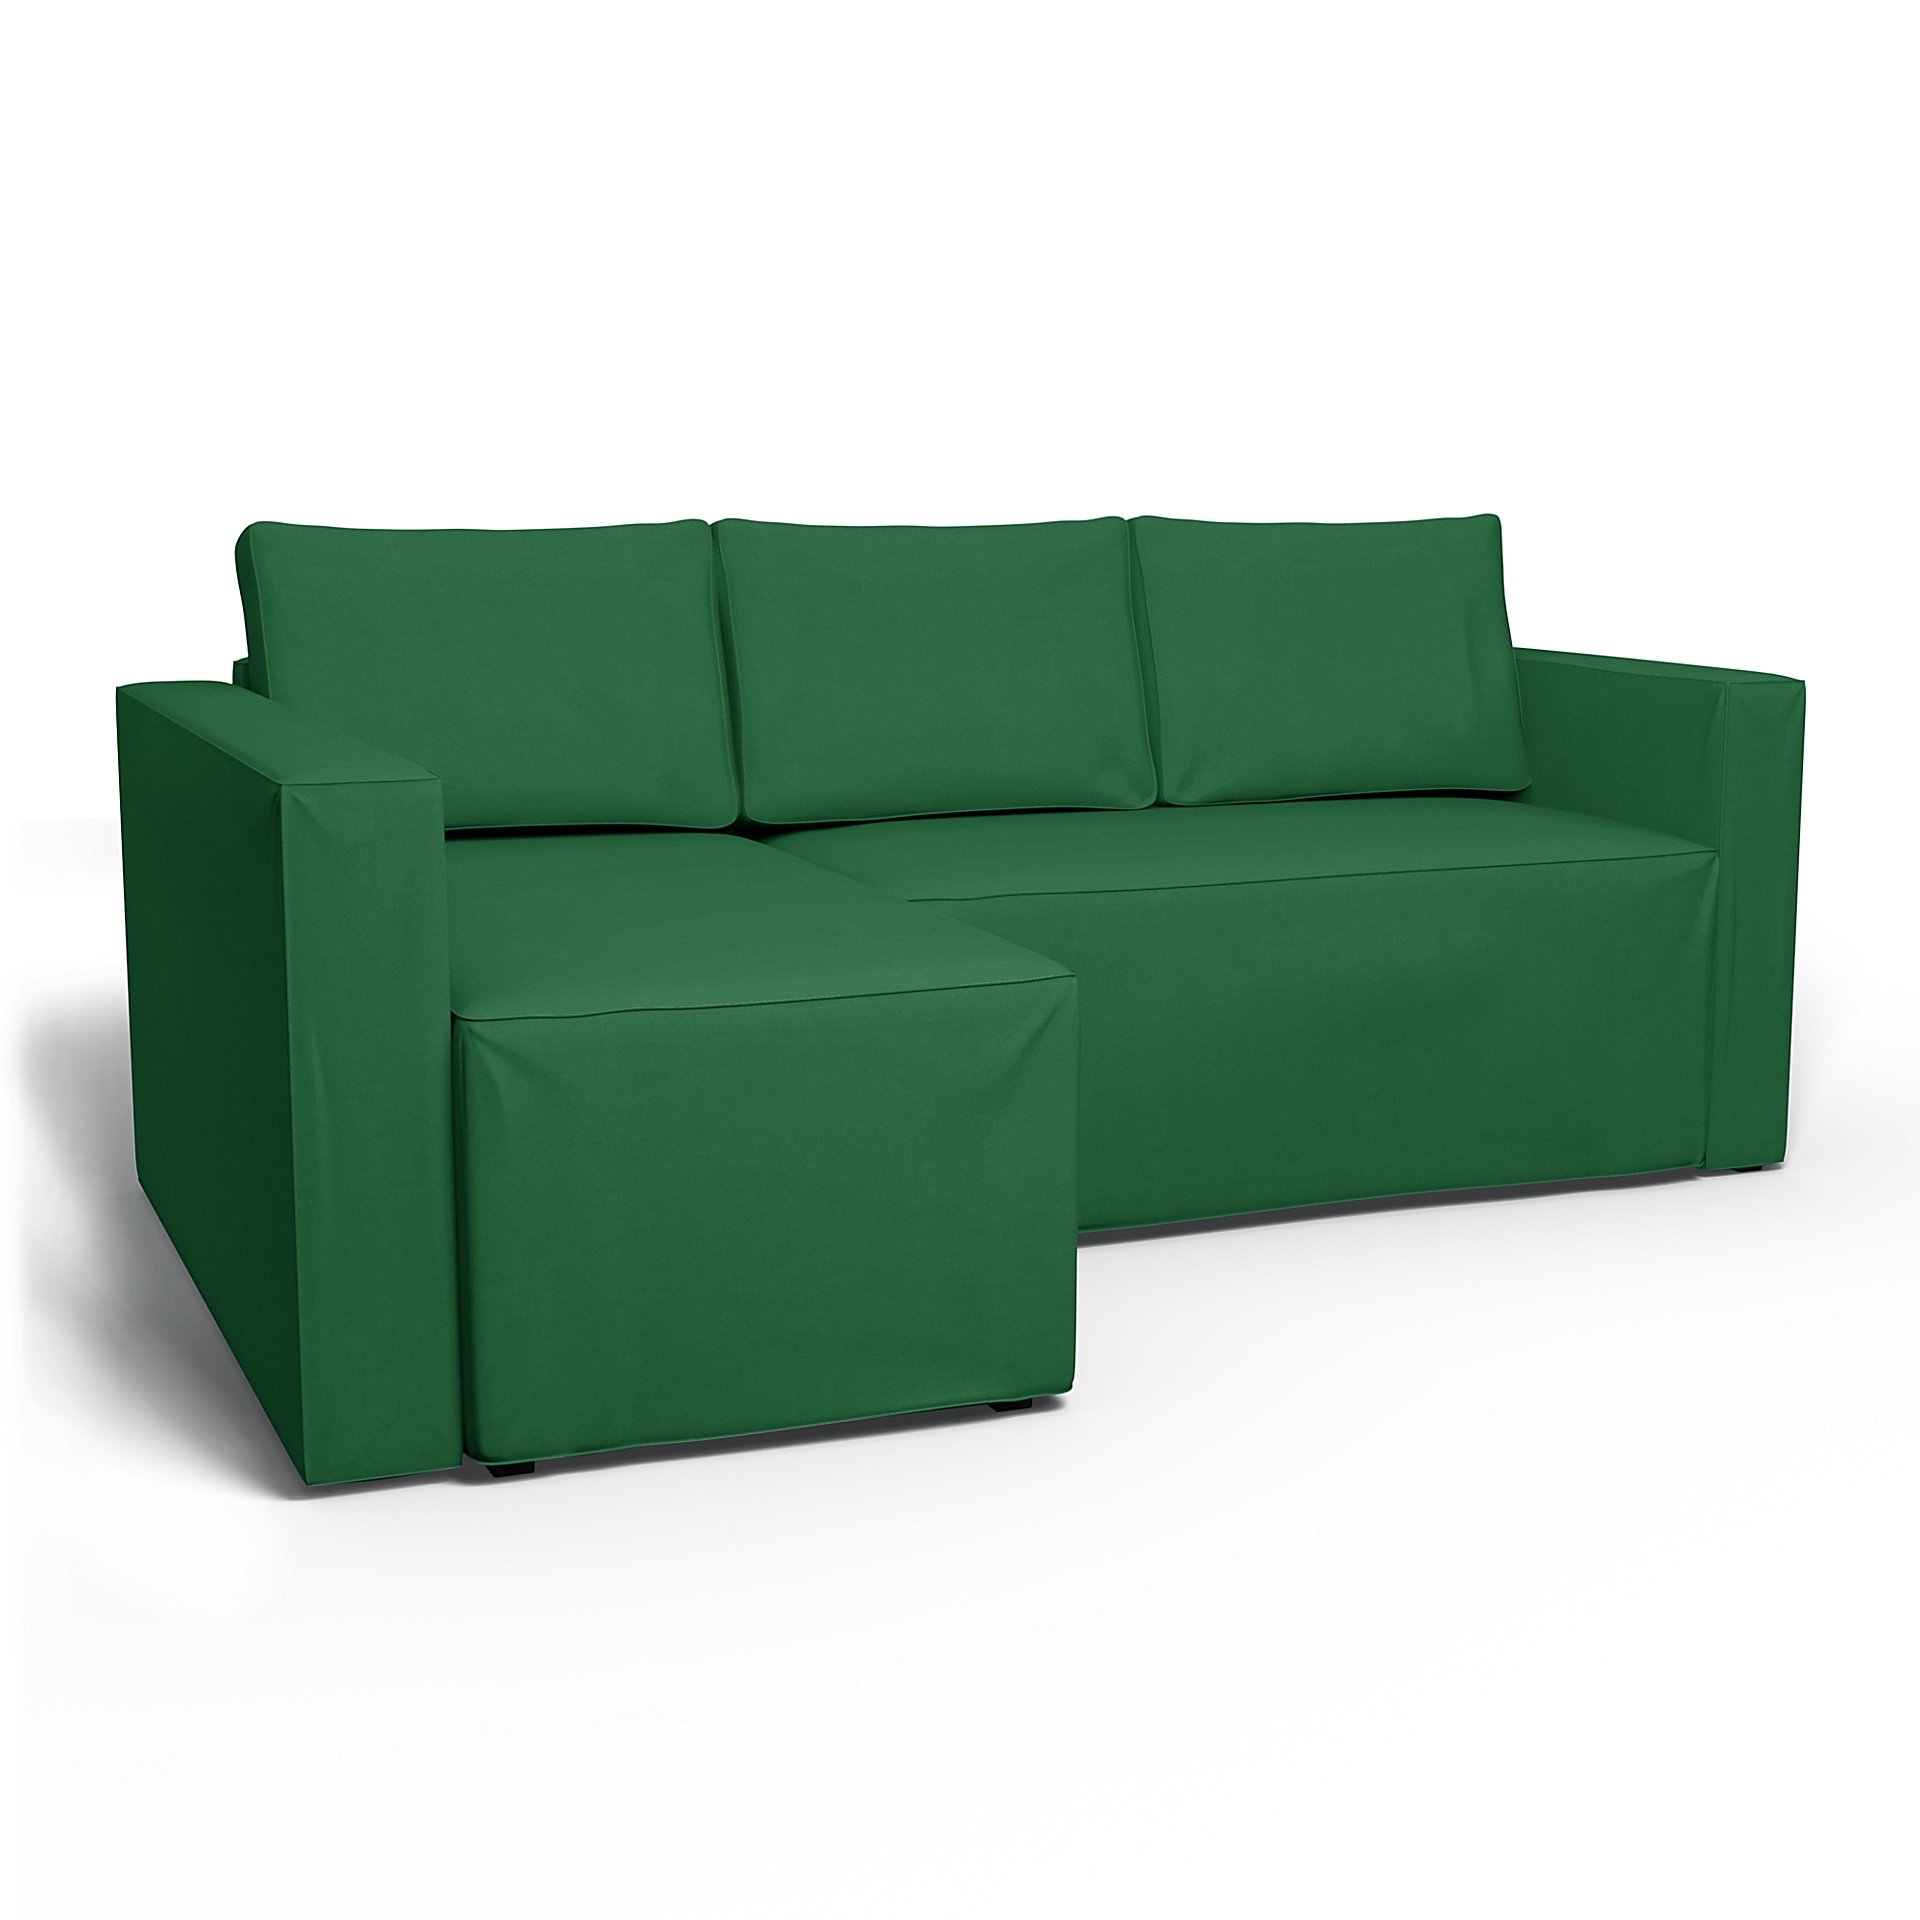 IKEA - Manstad Sofa Bed with Left Chaise Cover, Abundant Green, Velvet - Bemz